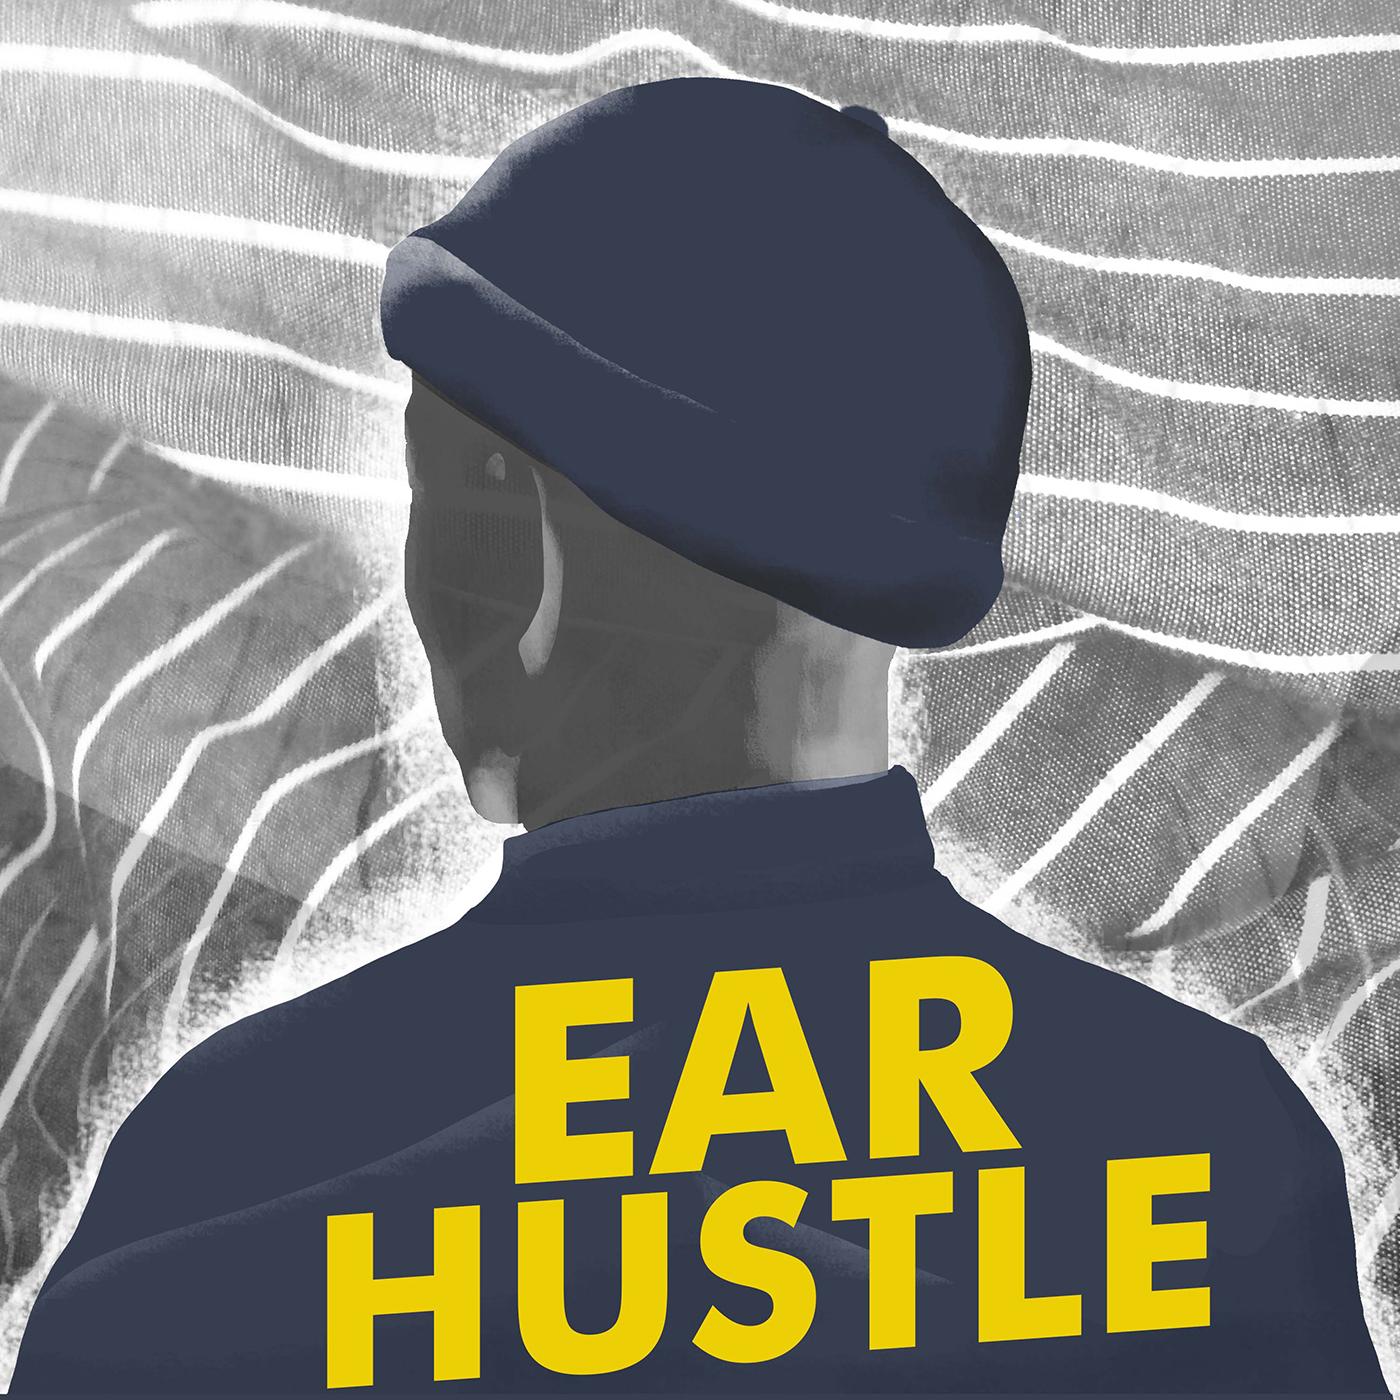 Thumbnail for "Meet Ear Hustle ".